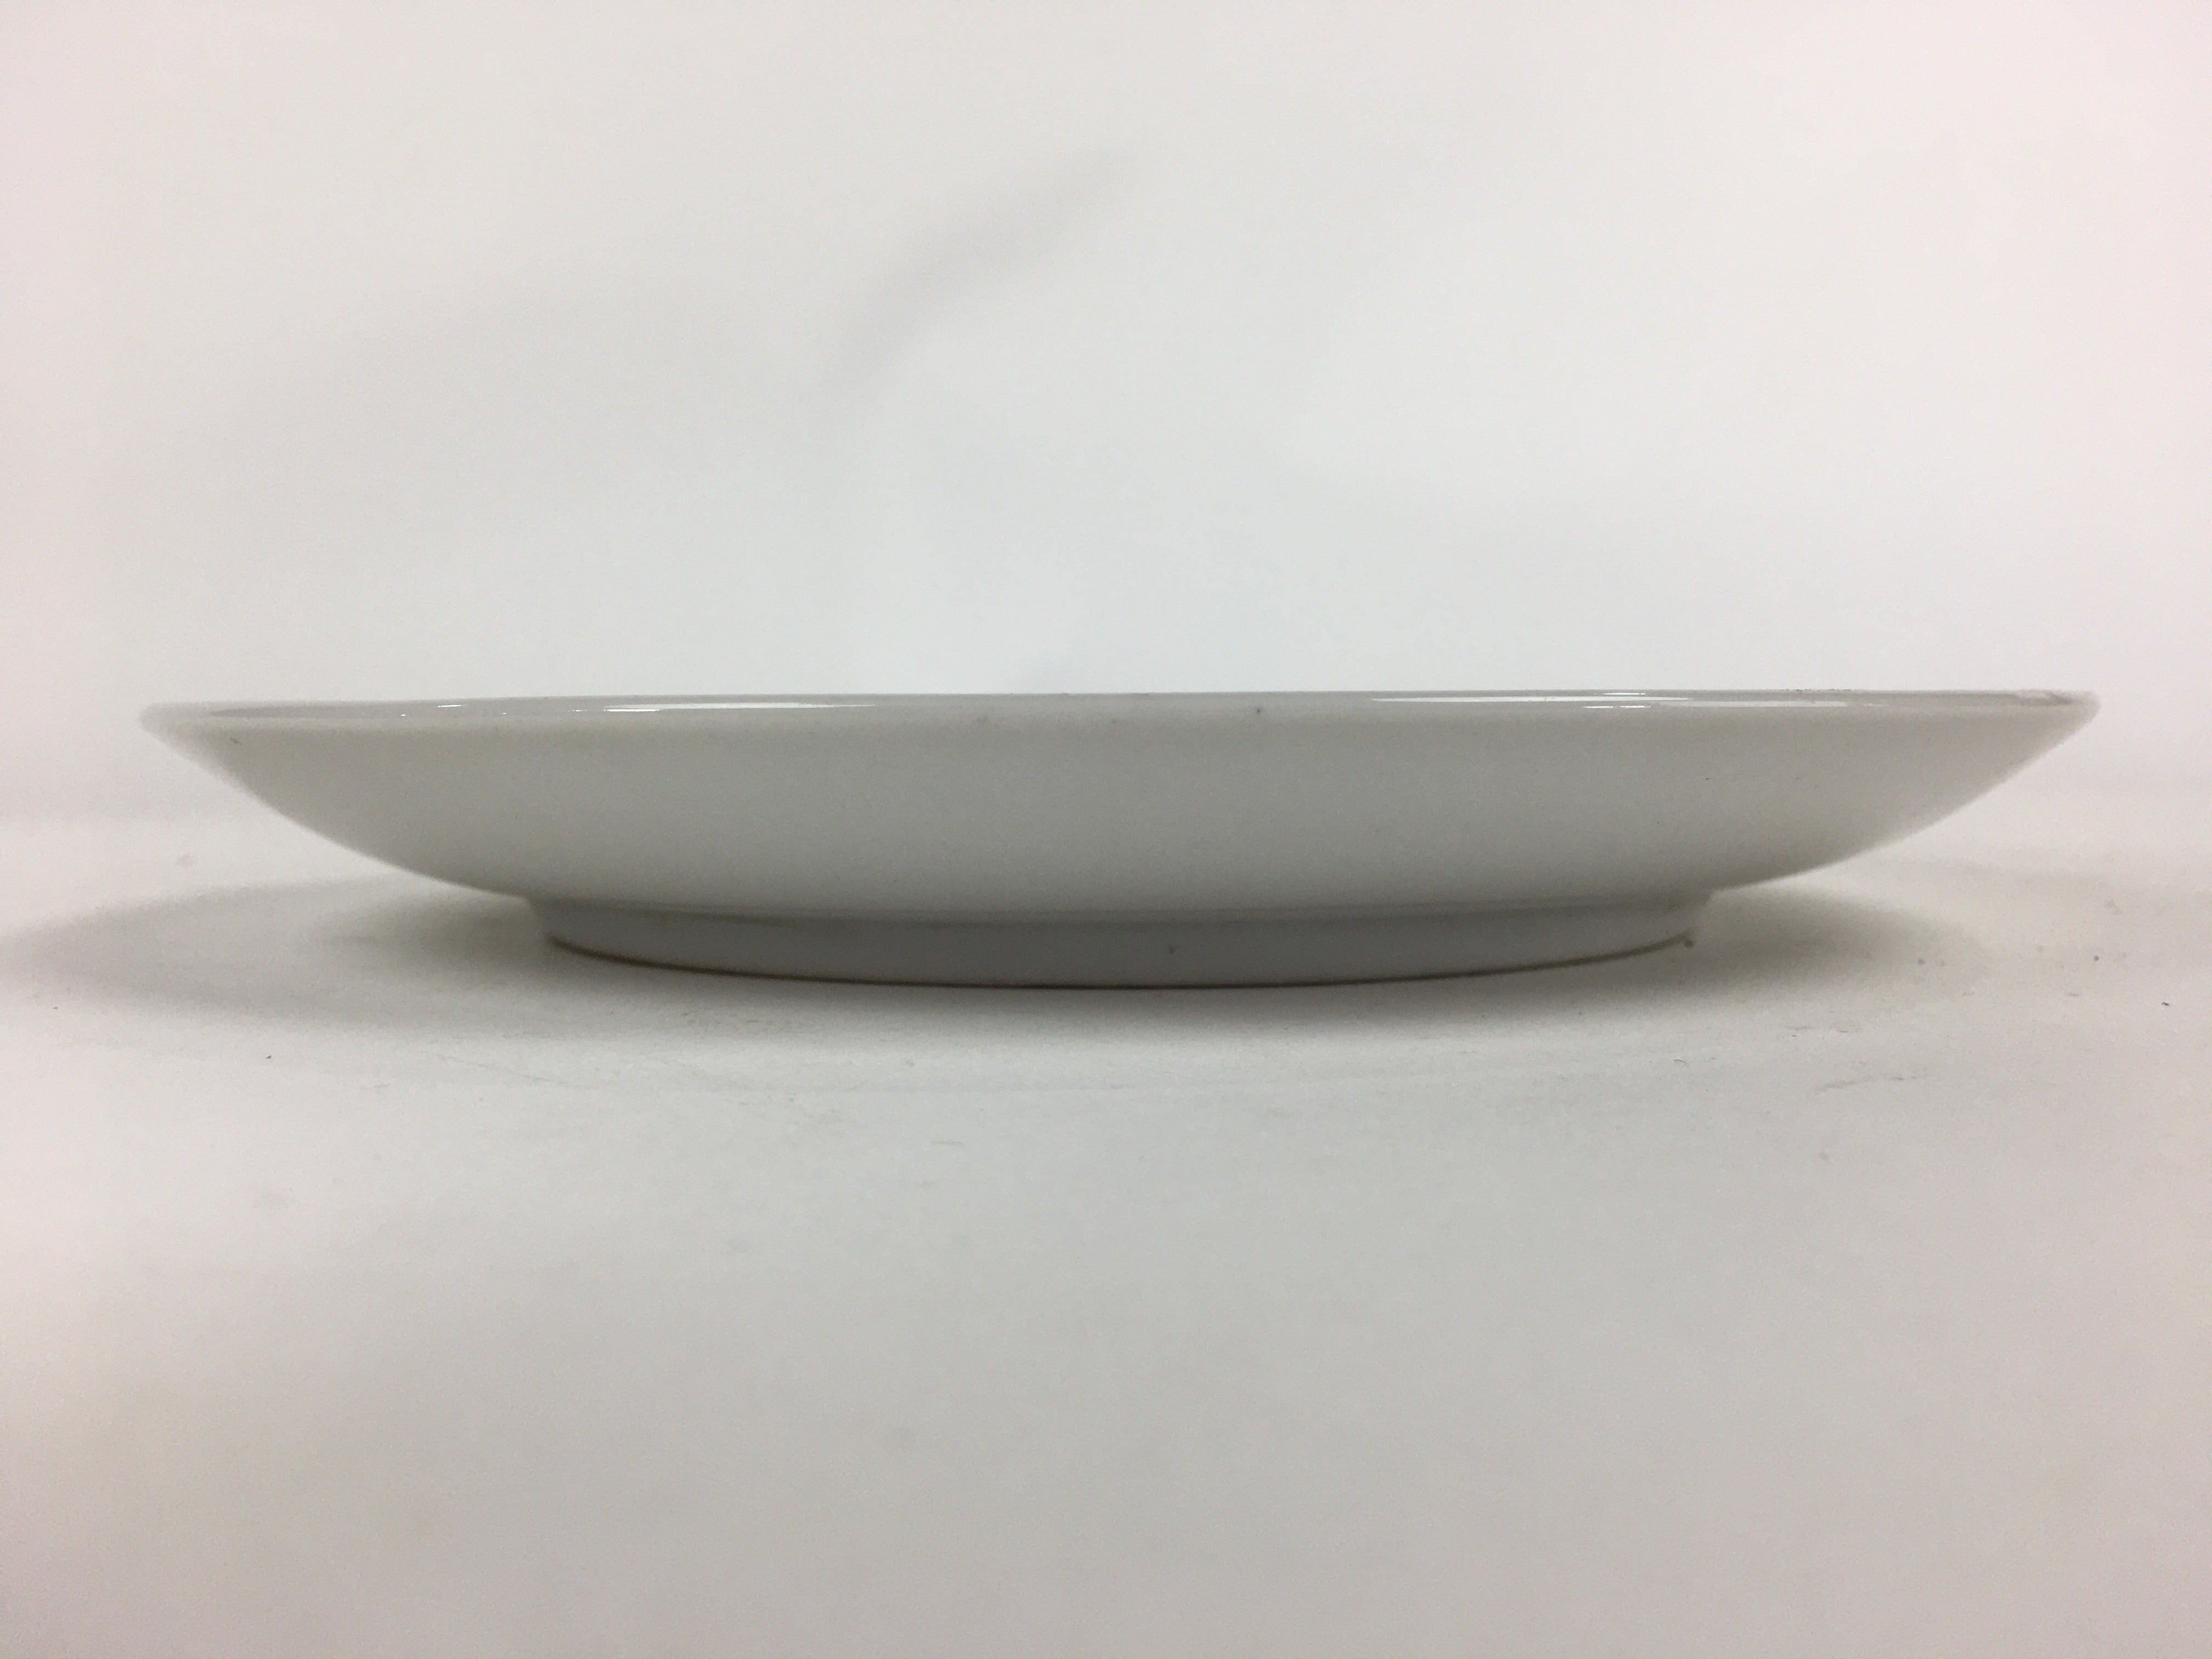 Japanese Porcelain Kutani Ware Plate Vtg White Flower Design Round Sara PP766